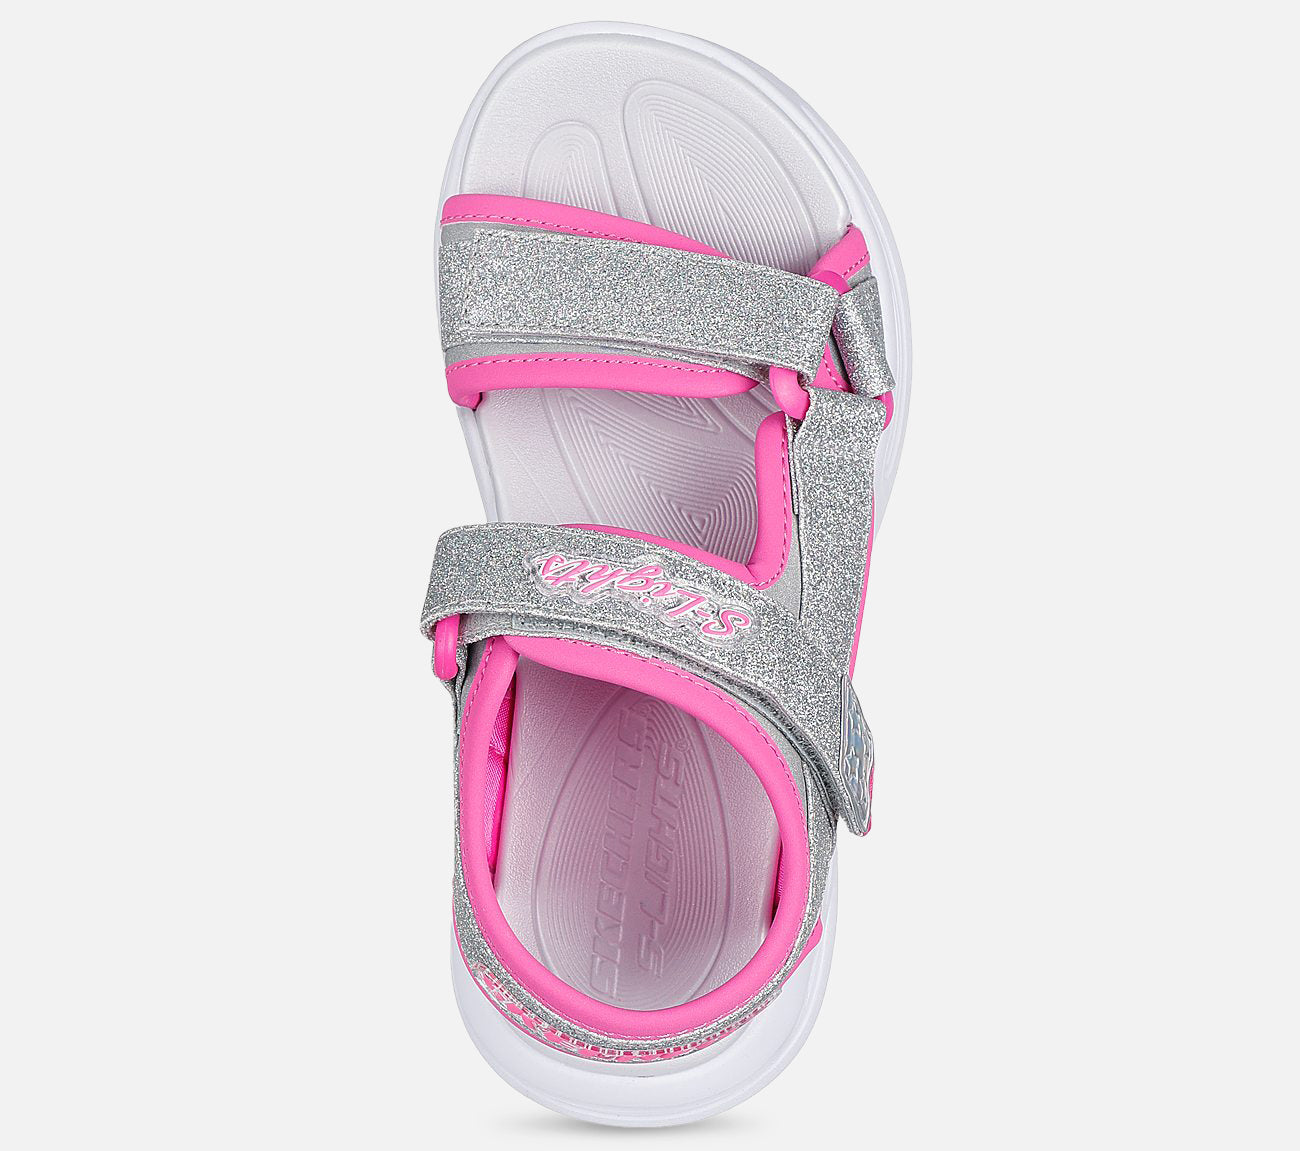 Sola Glow Sandal Skechers